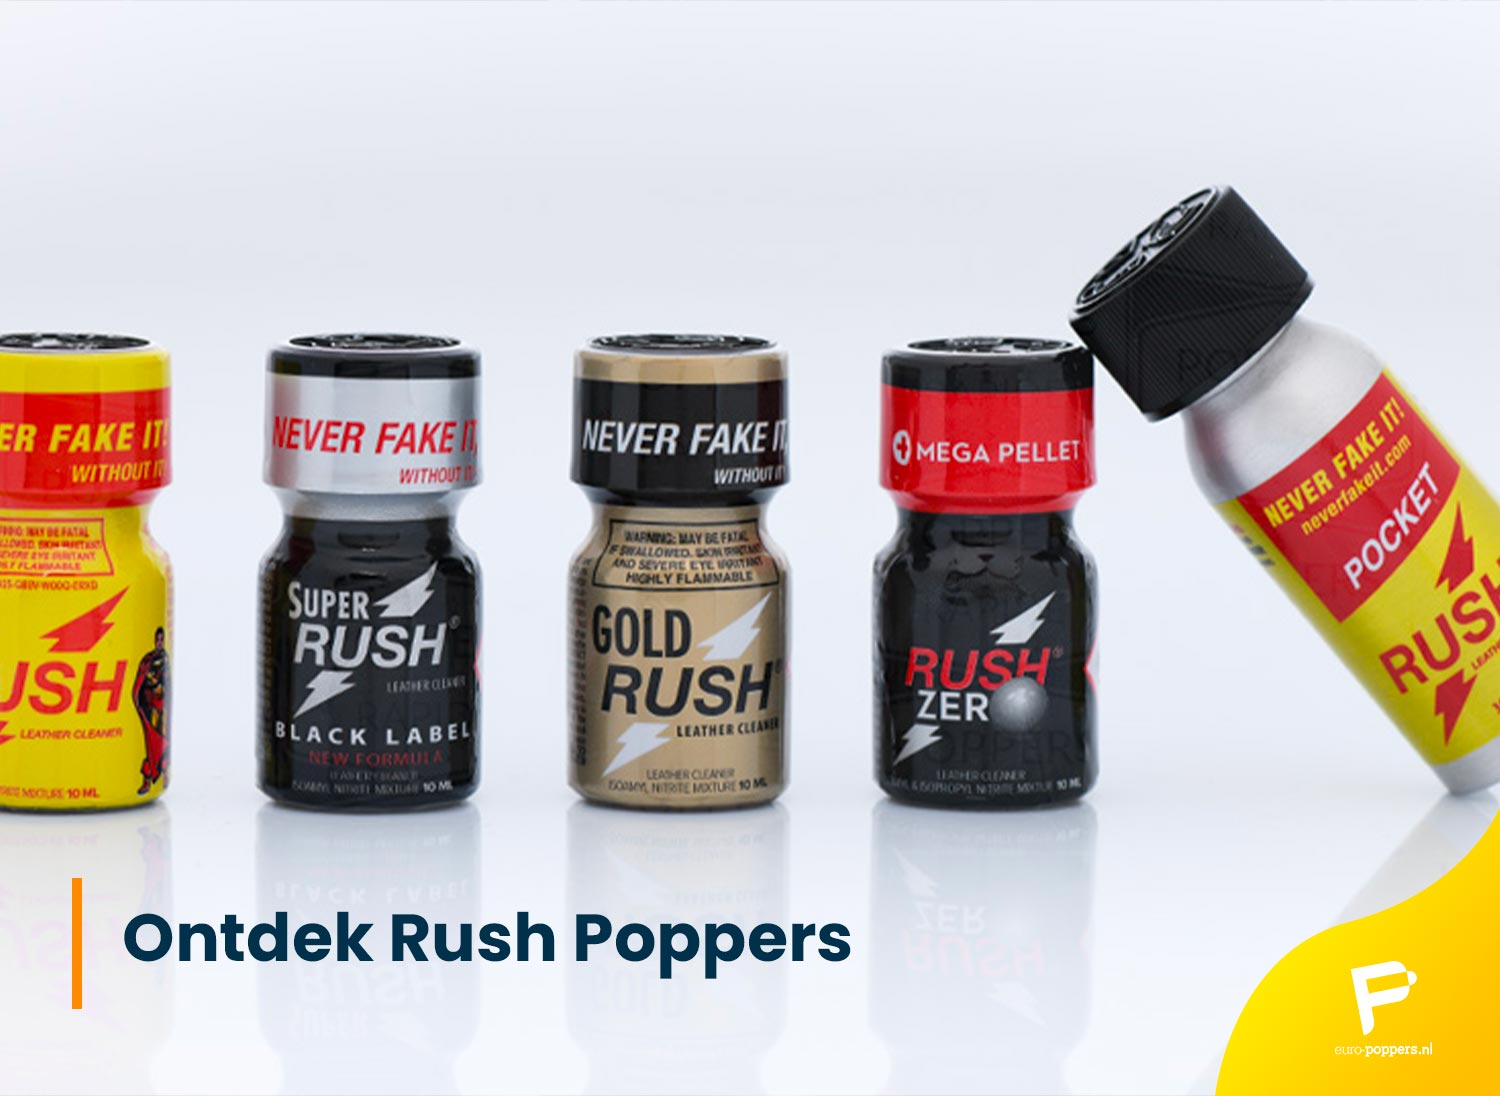 Je bekijkt nu <strong>Ontdek Rush Poppers: de geschiedenis en de producten van het merk</strong>